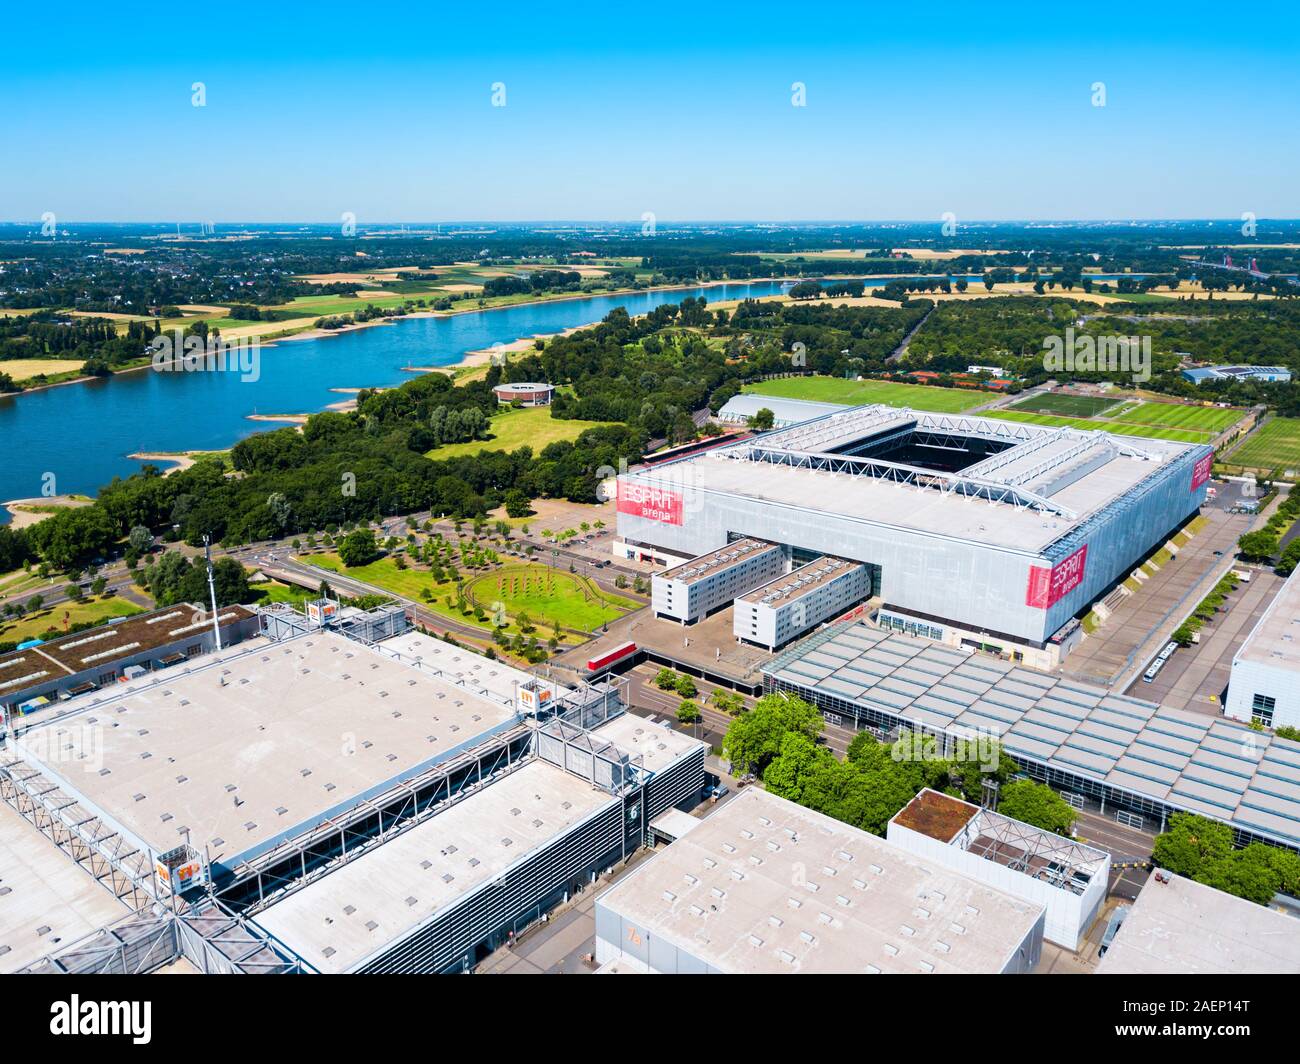 DUSSELDORF, Germania - Luglio 02, 2018: Dusseldorf Messe il terreno fieristico e Esprit Arena stadium di Dusseldorf City in Germania Foto Stock